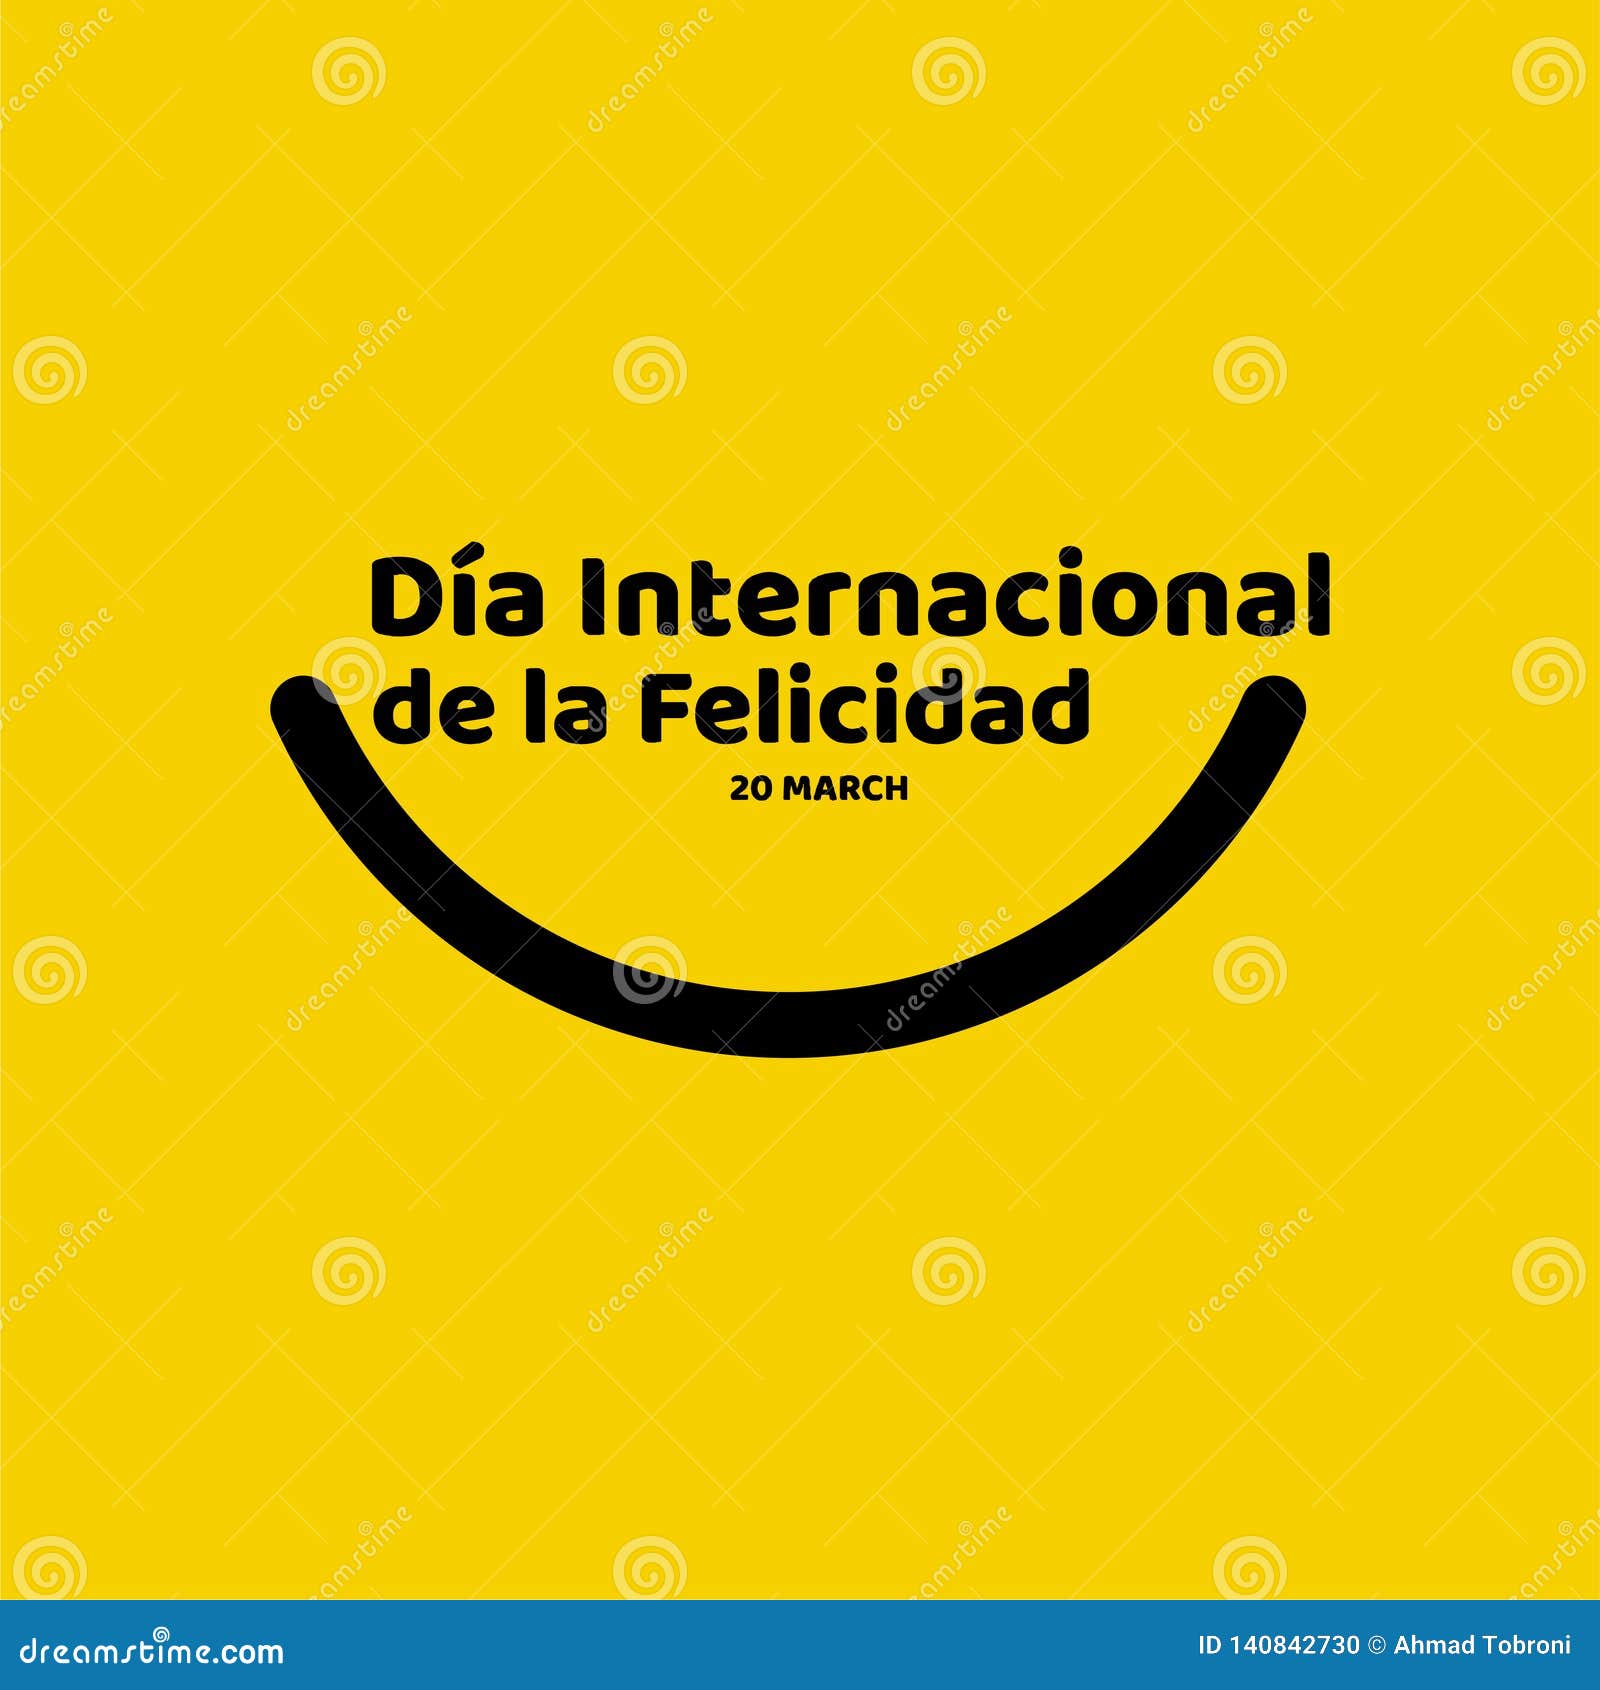 dia internacional de la felicidad  template  